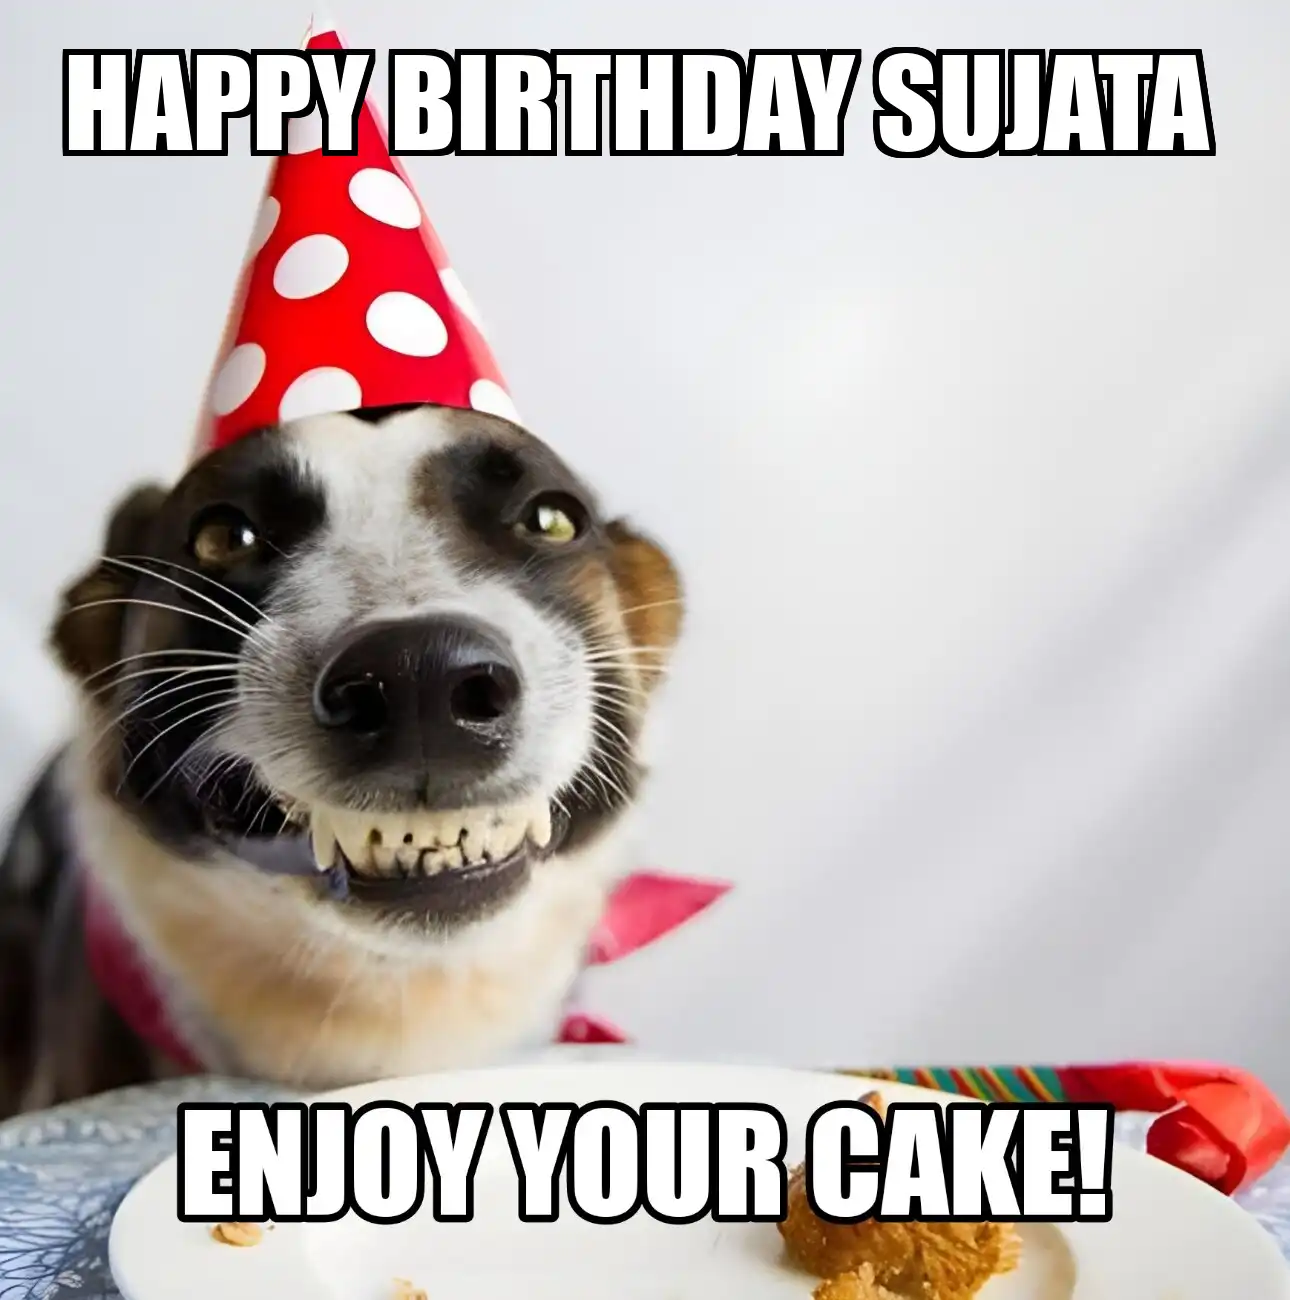 Happy Birthday Sujata Enjoy Your Cake Dog Meme